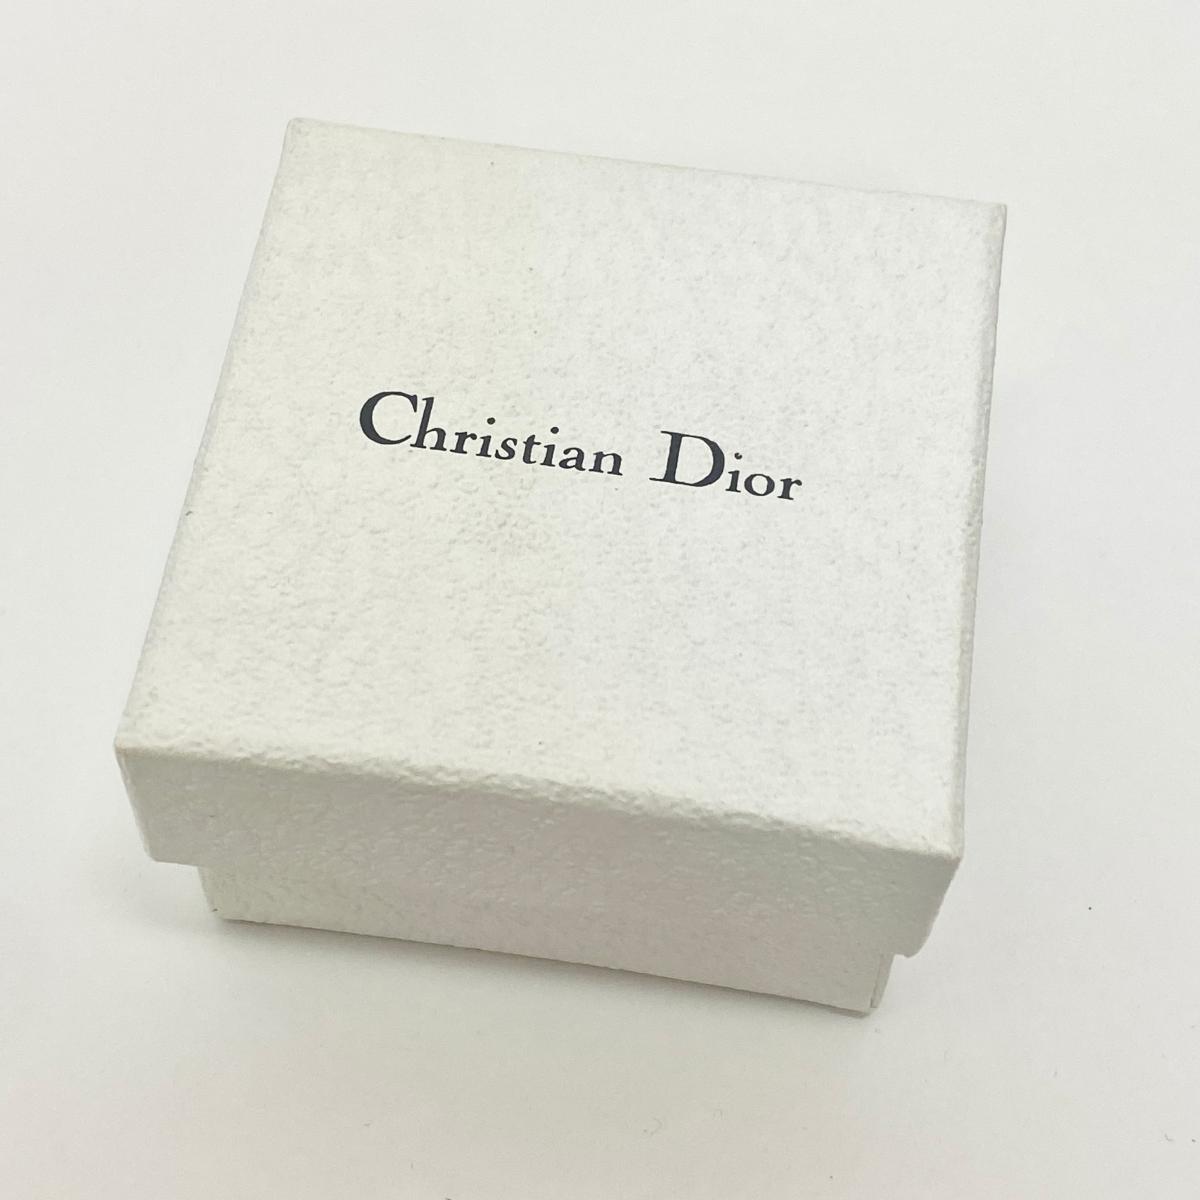 ◆Christian Dior クリスチャンディオール バングル ◆ ピンク/ベージュ レザー レディース 腕輪 accessory アクセサリー KI1004_画像6